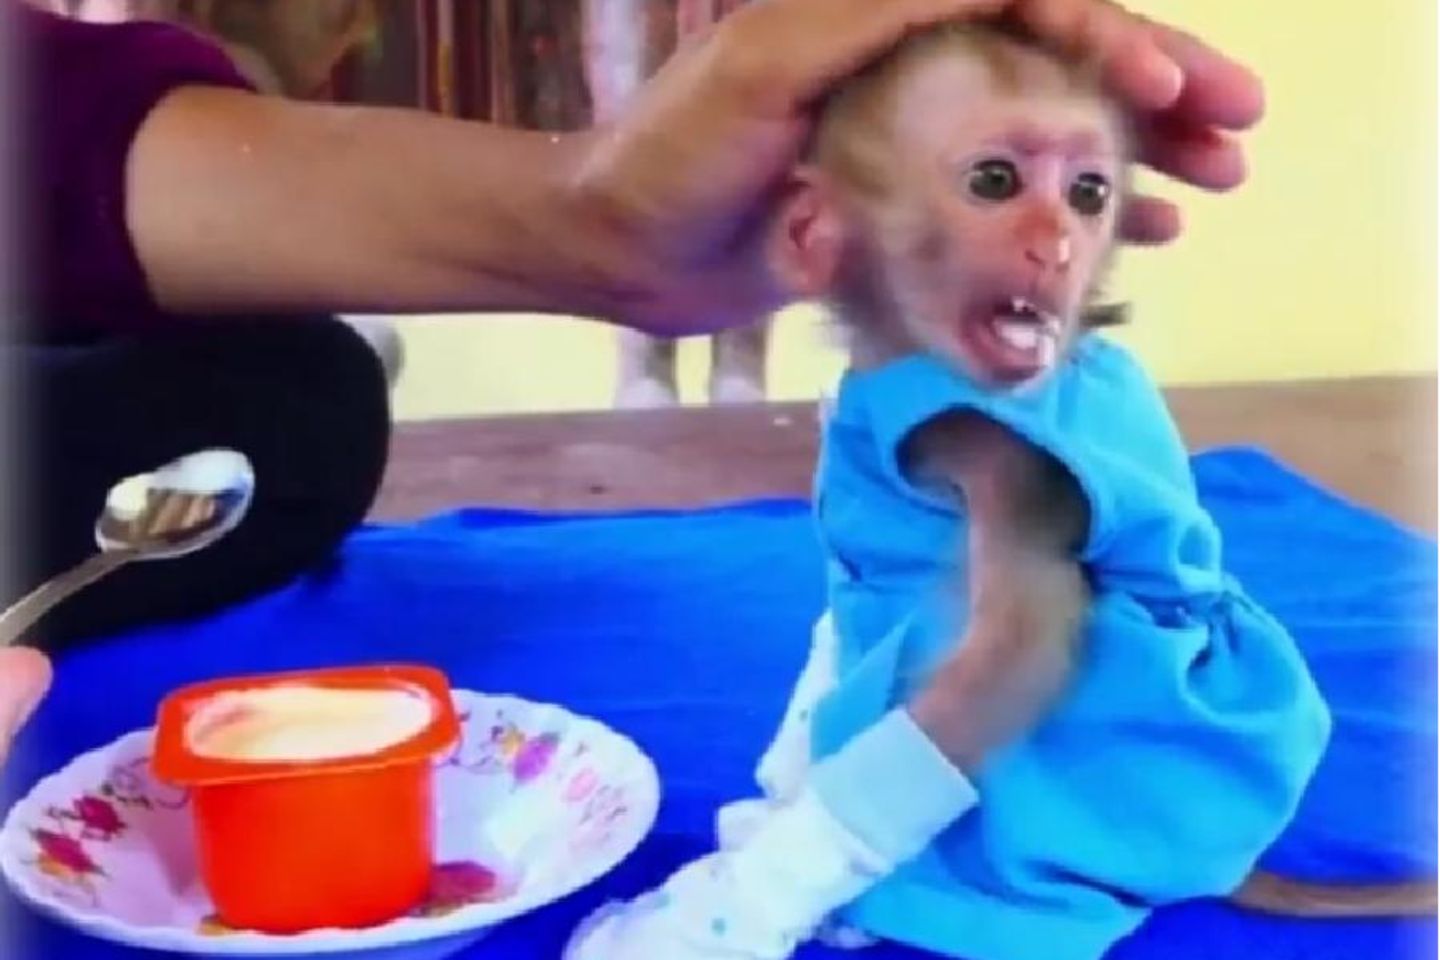 Gut gemeint oder grausam? Die Vermenschlichung von jungen Makaken – zu sehen in zahllosen Videos in den sozialen Netzwerken – ist meist mit Tierleid verbunden